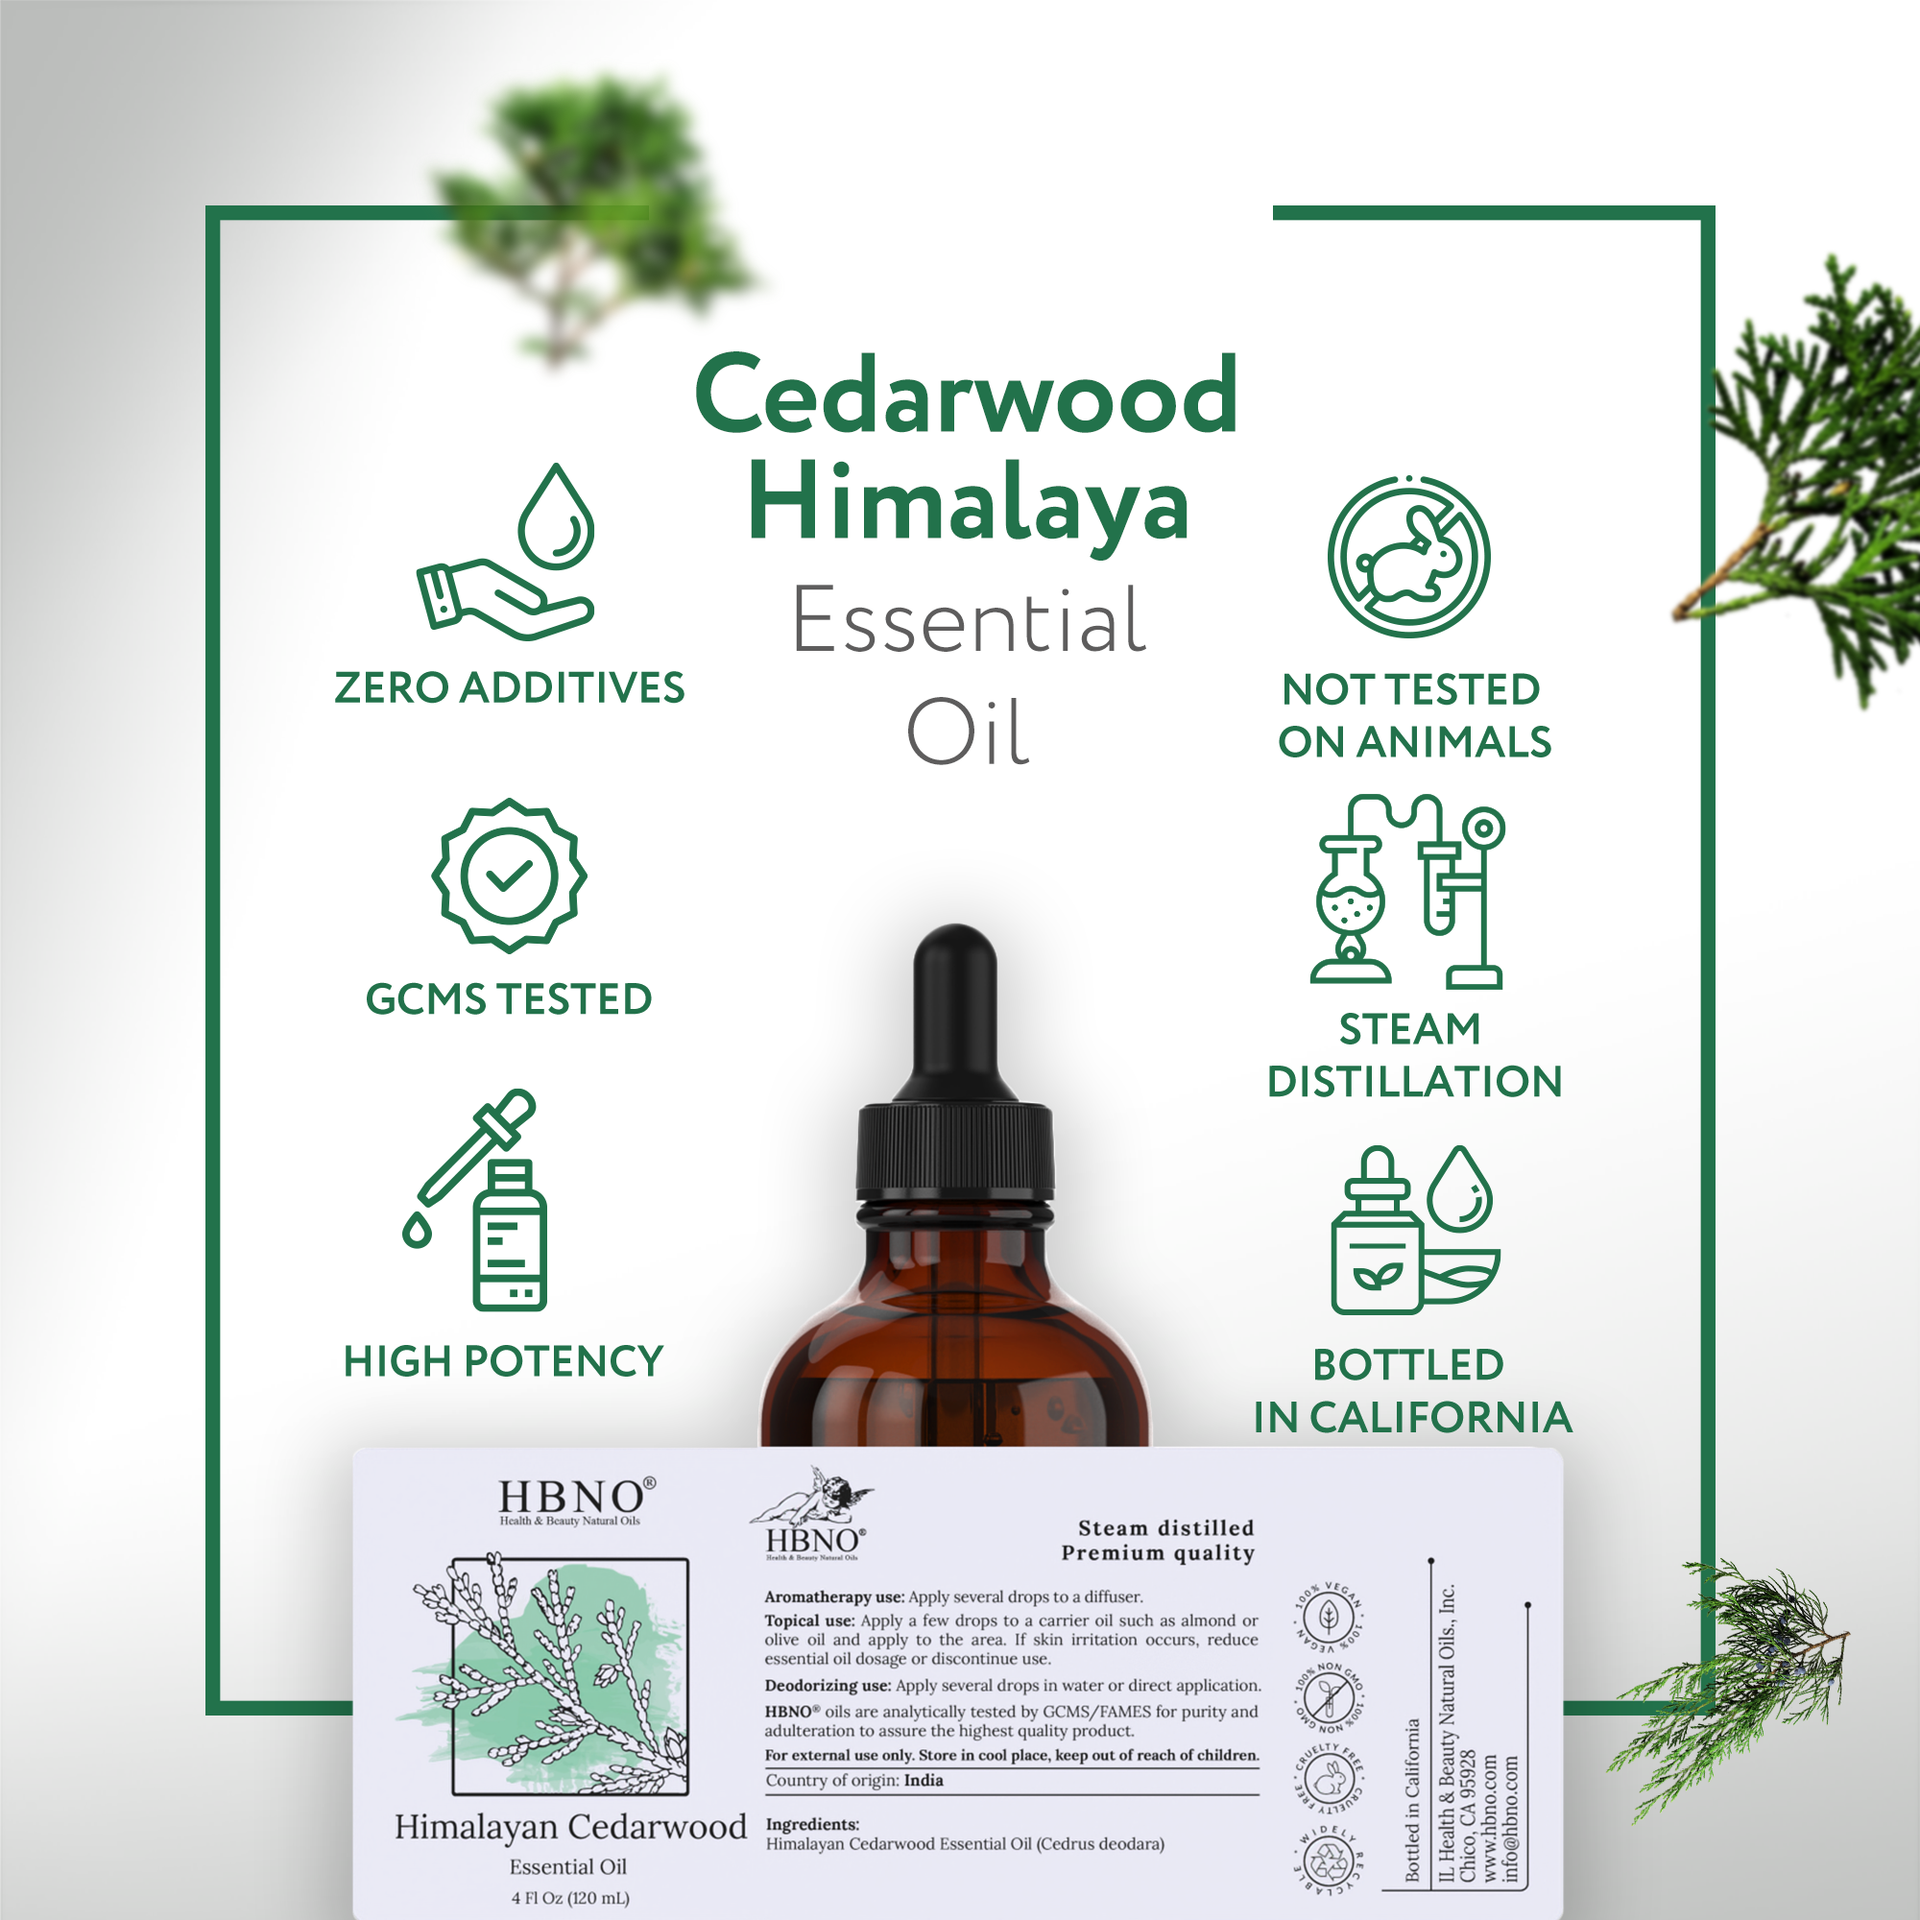 Cedarwood Himalaya Essential Oil